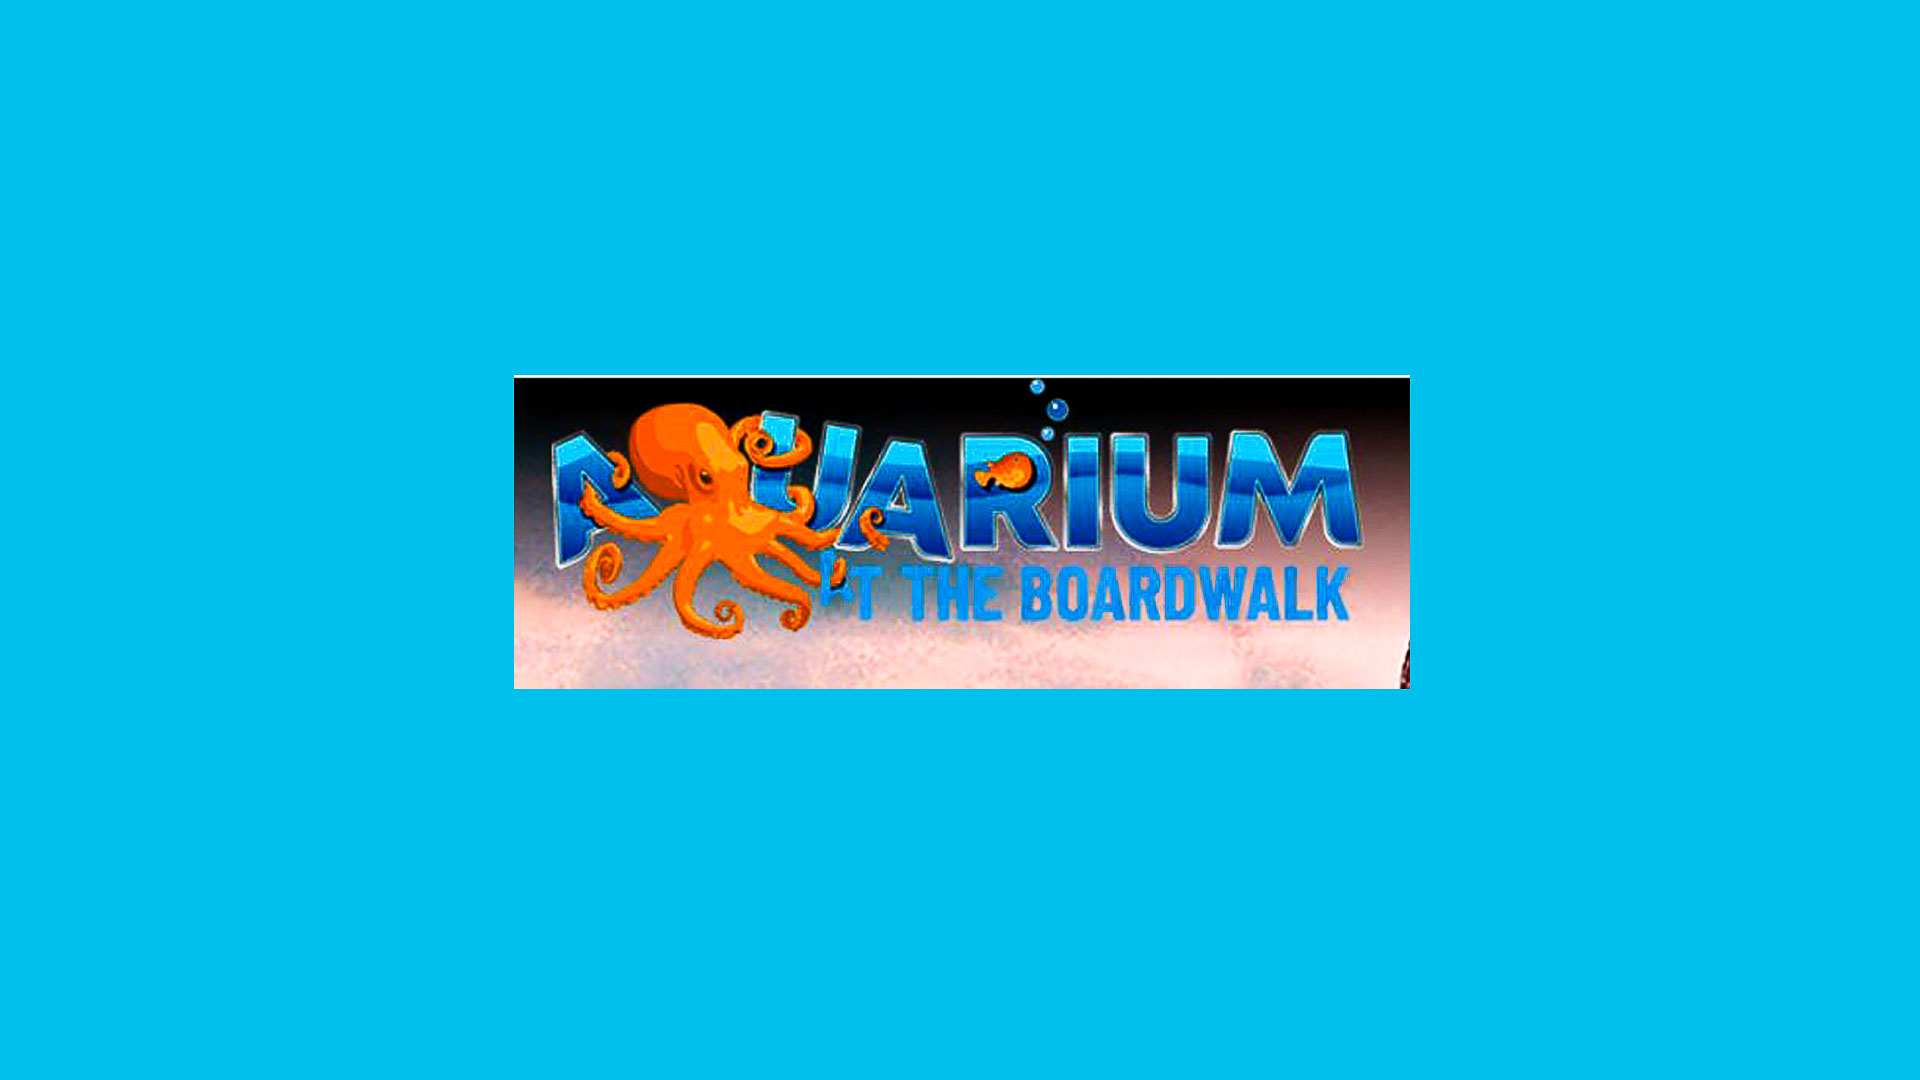 190125 Logo Aquarium Boardwalk - Kuvera Research Indicates Aquarium to Bring New Visitors to Branson